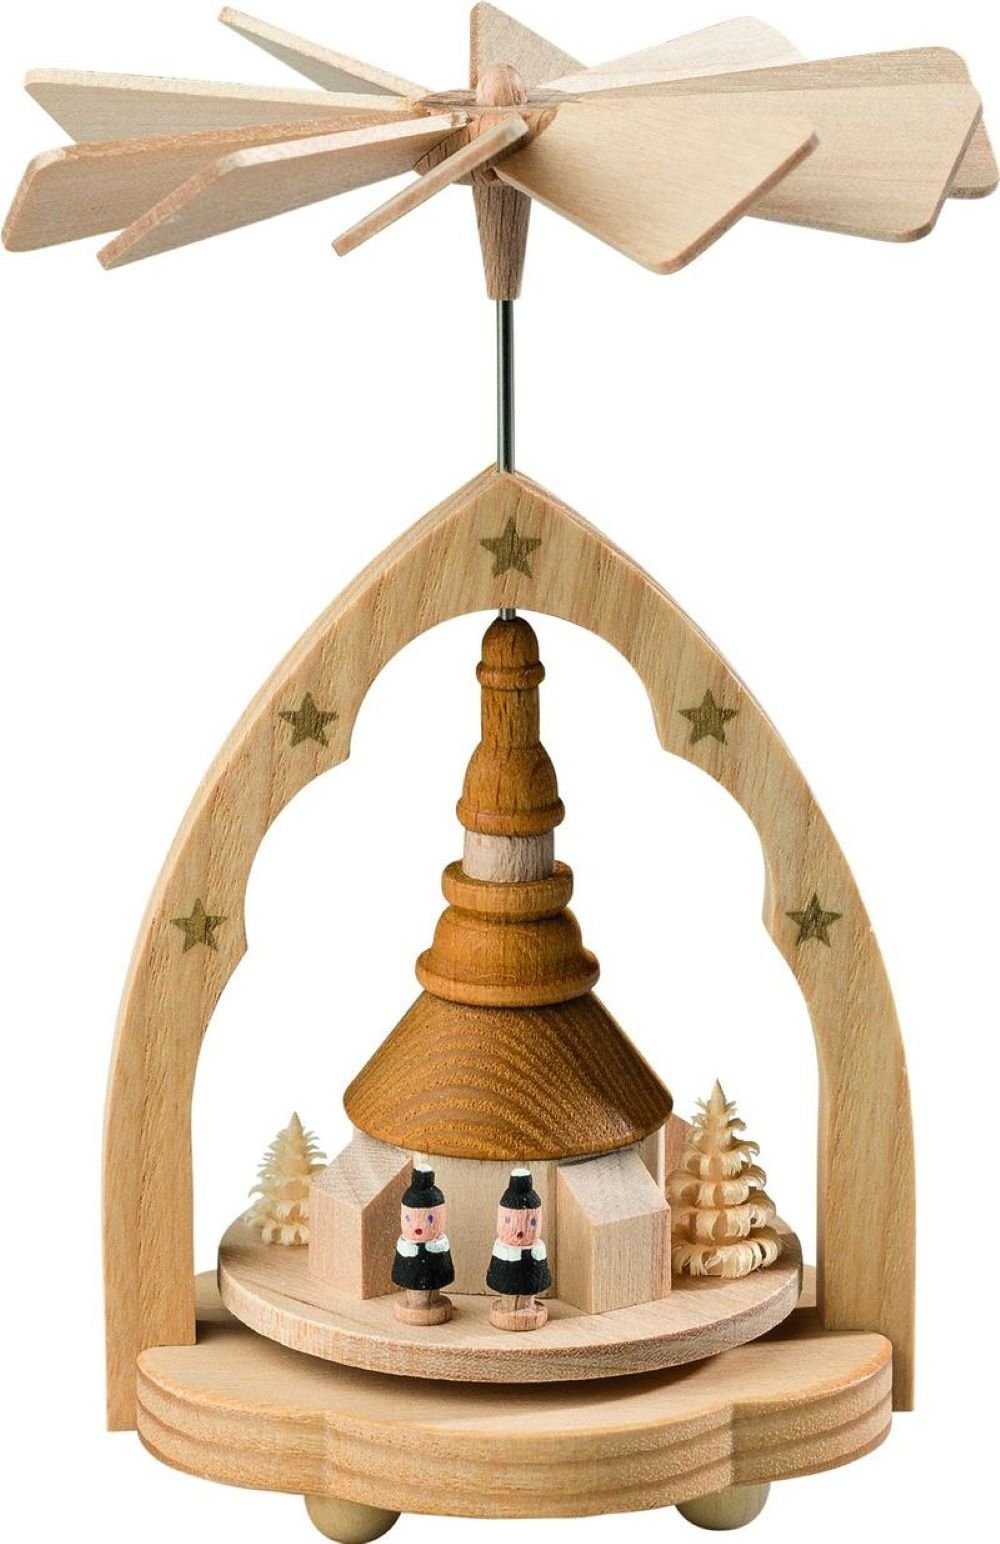 Höhe 11cm, original Weihnachtspyramide Wärmespiel Erzgebirge Richard Kirche, Handwerkskunst Seiffener Glaesser